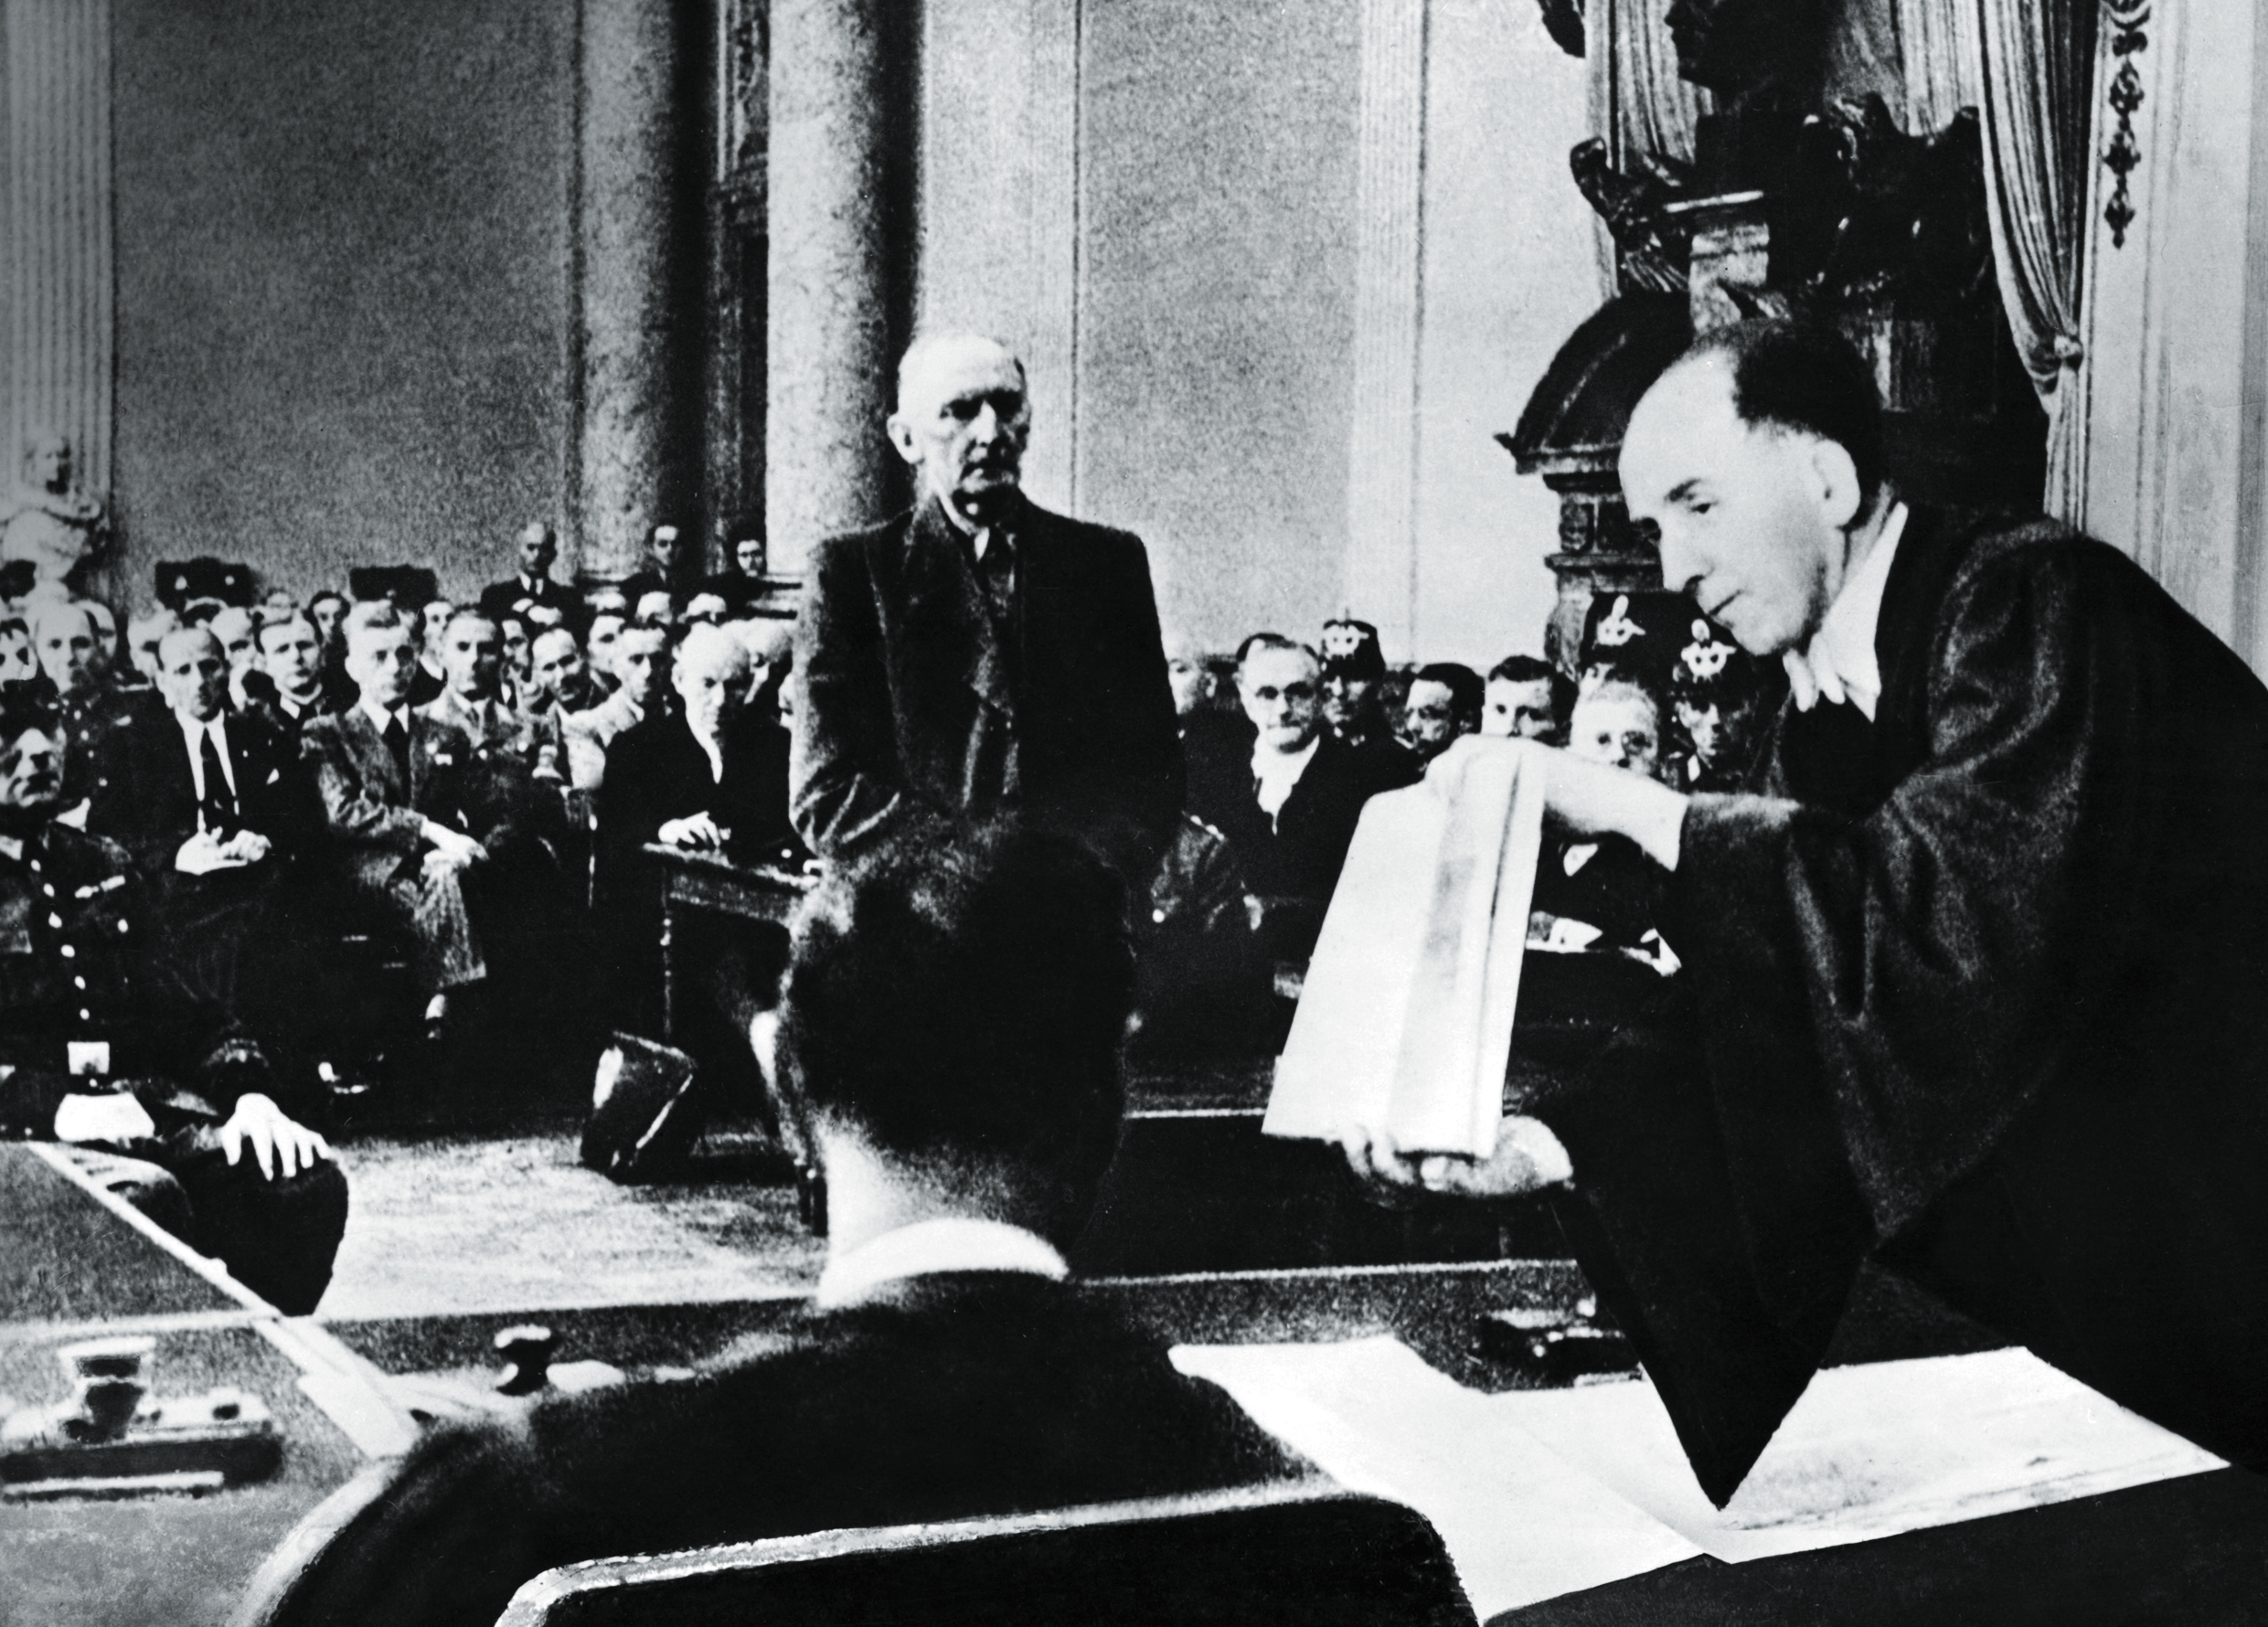 Erwin von Witzleben odpowiada w trakcie procesu spiskowców na pytania Rolanda Freislera, 1944 r.